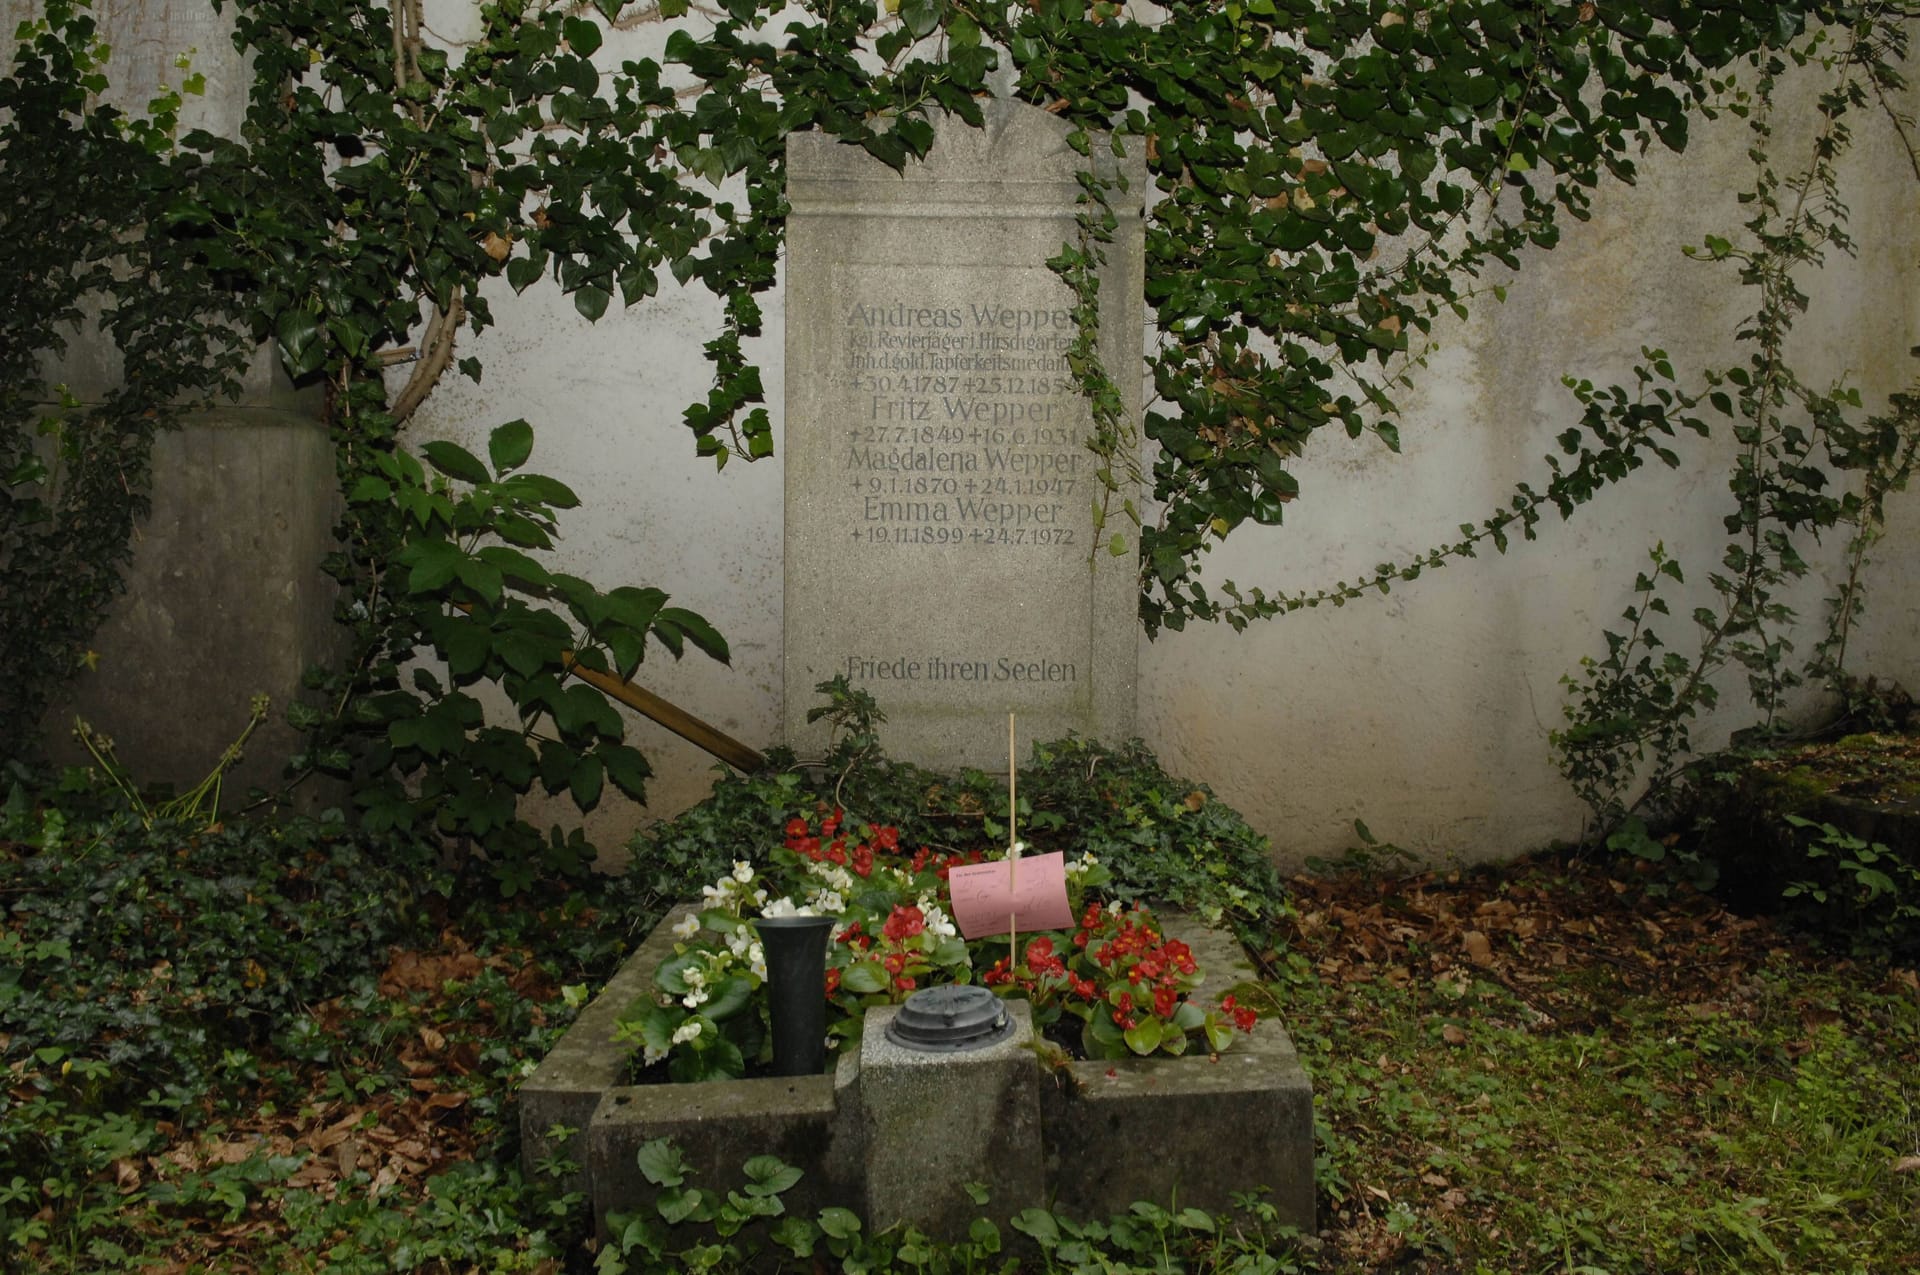 Das Familiengrab der Weppers in München-Neuhausen.